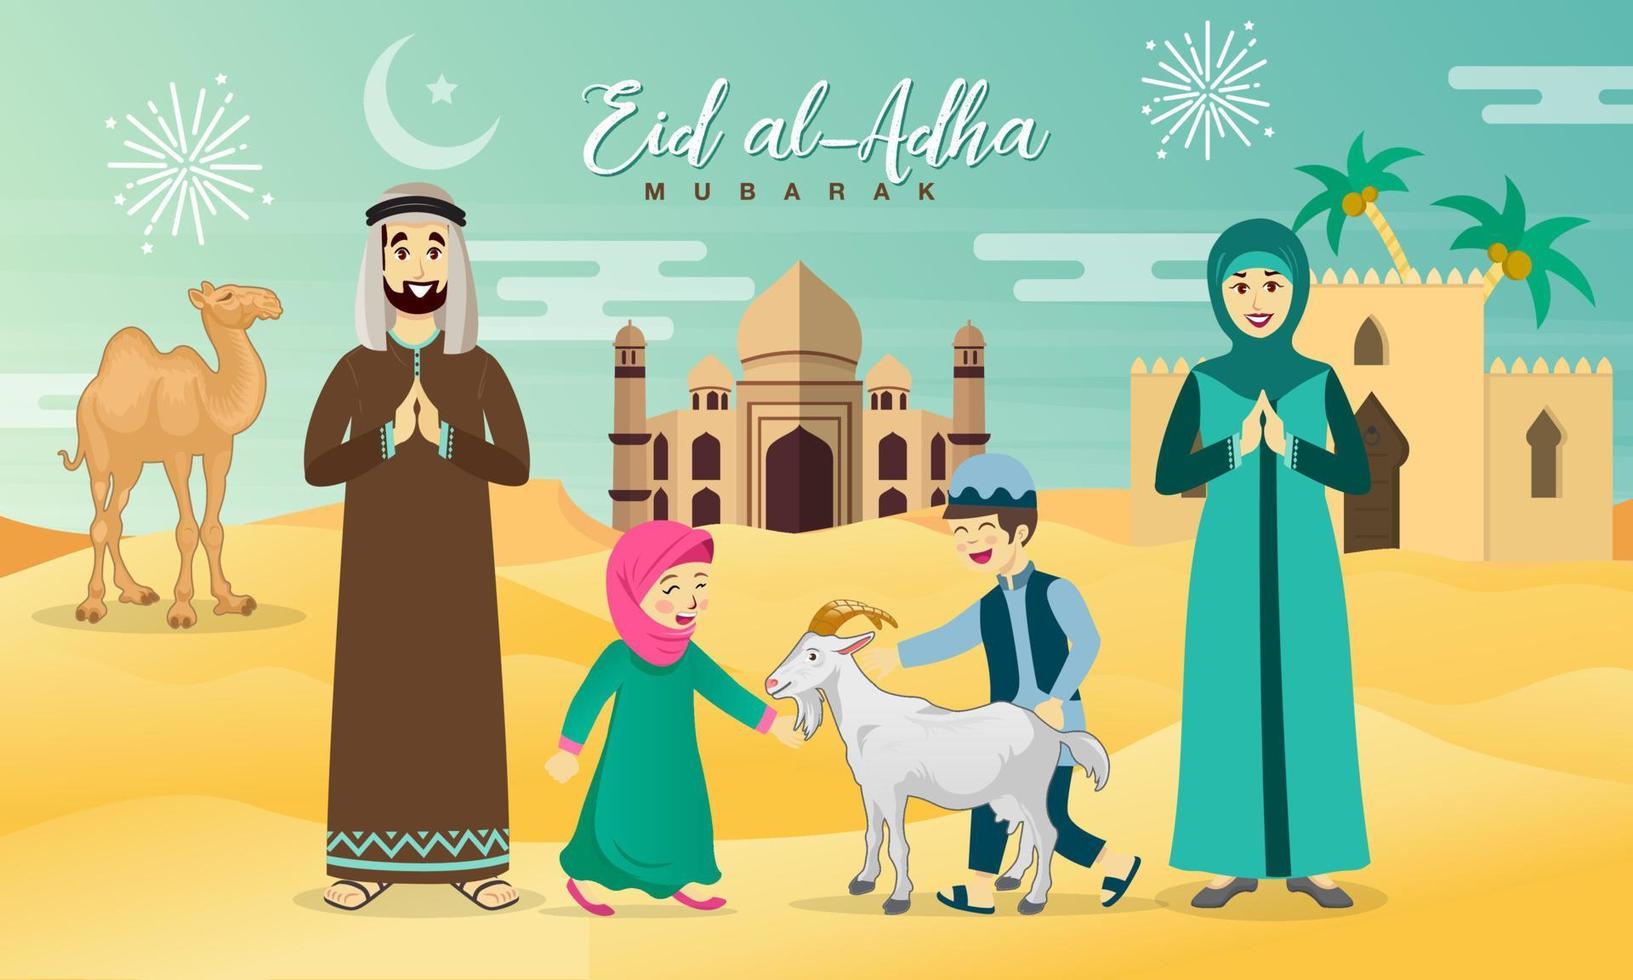 cartão de felicitações eid al adha. família árabe dos desenhos animados comemorando eid al adha com deserto, camelo e mesquita como pano de fundo vetor